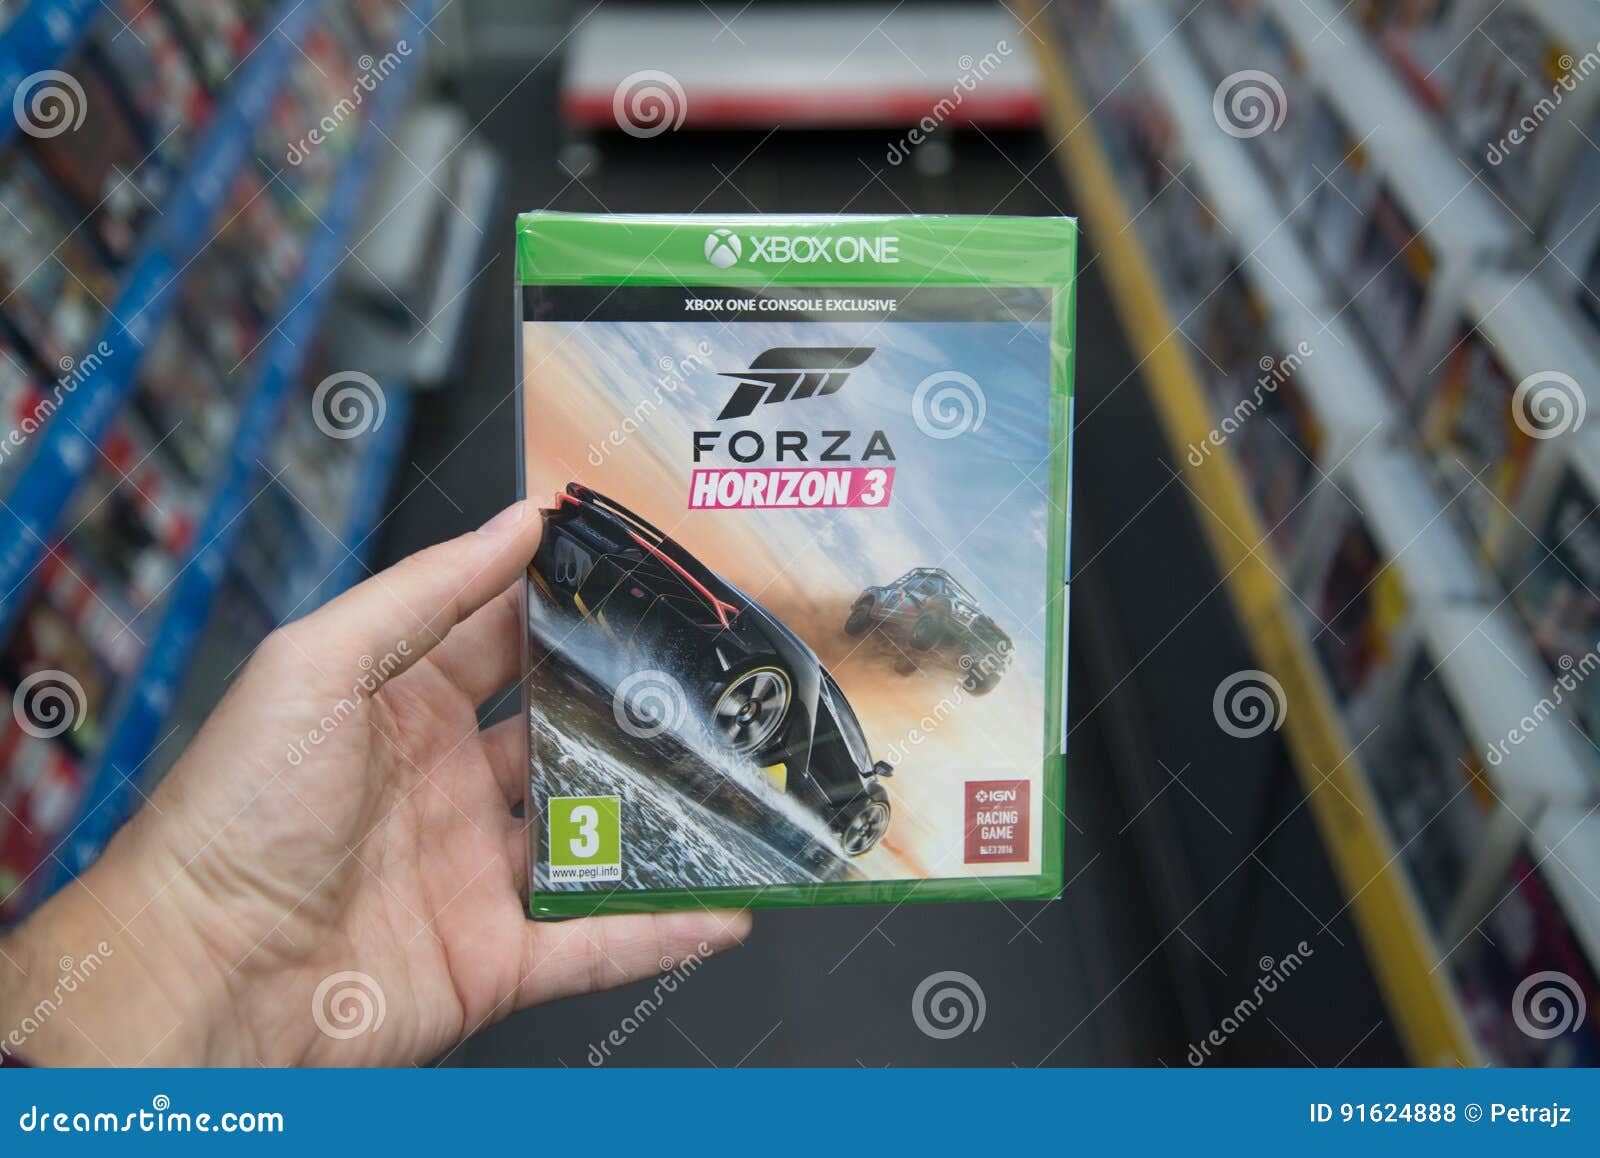 Forza Horizon 3 - IGN